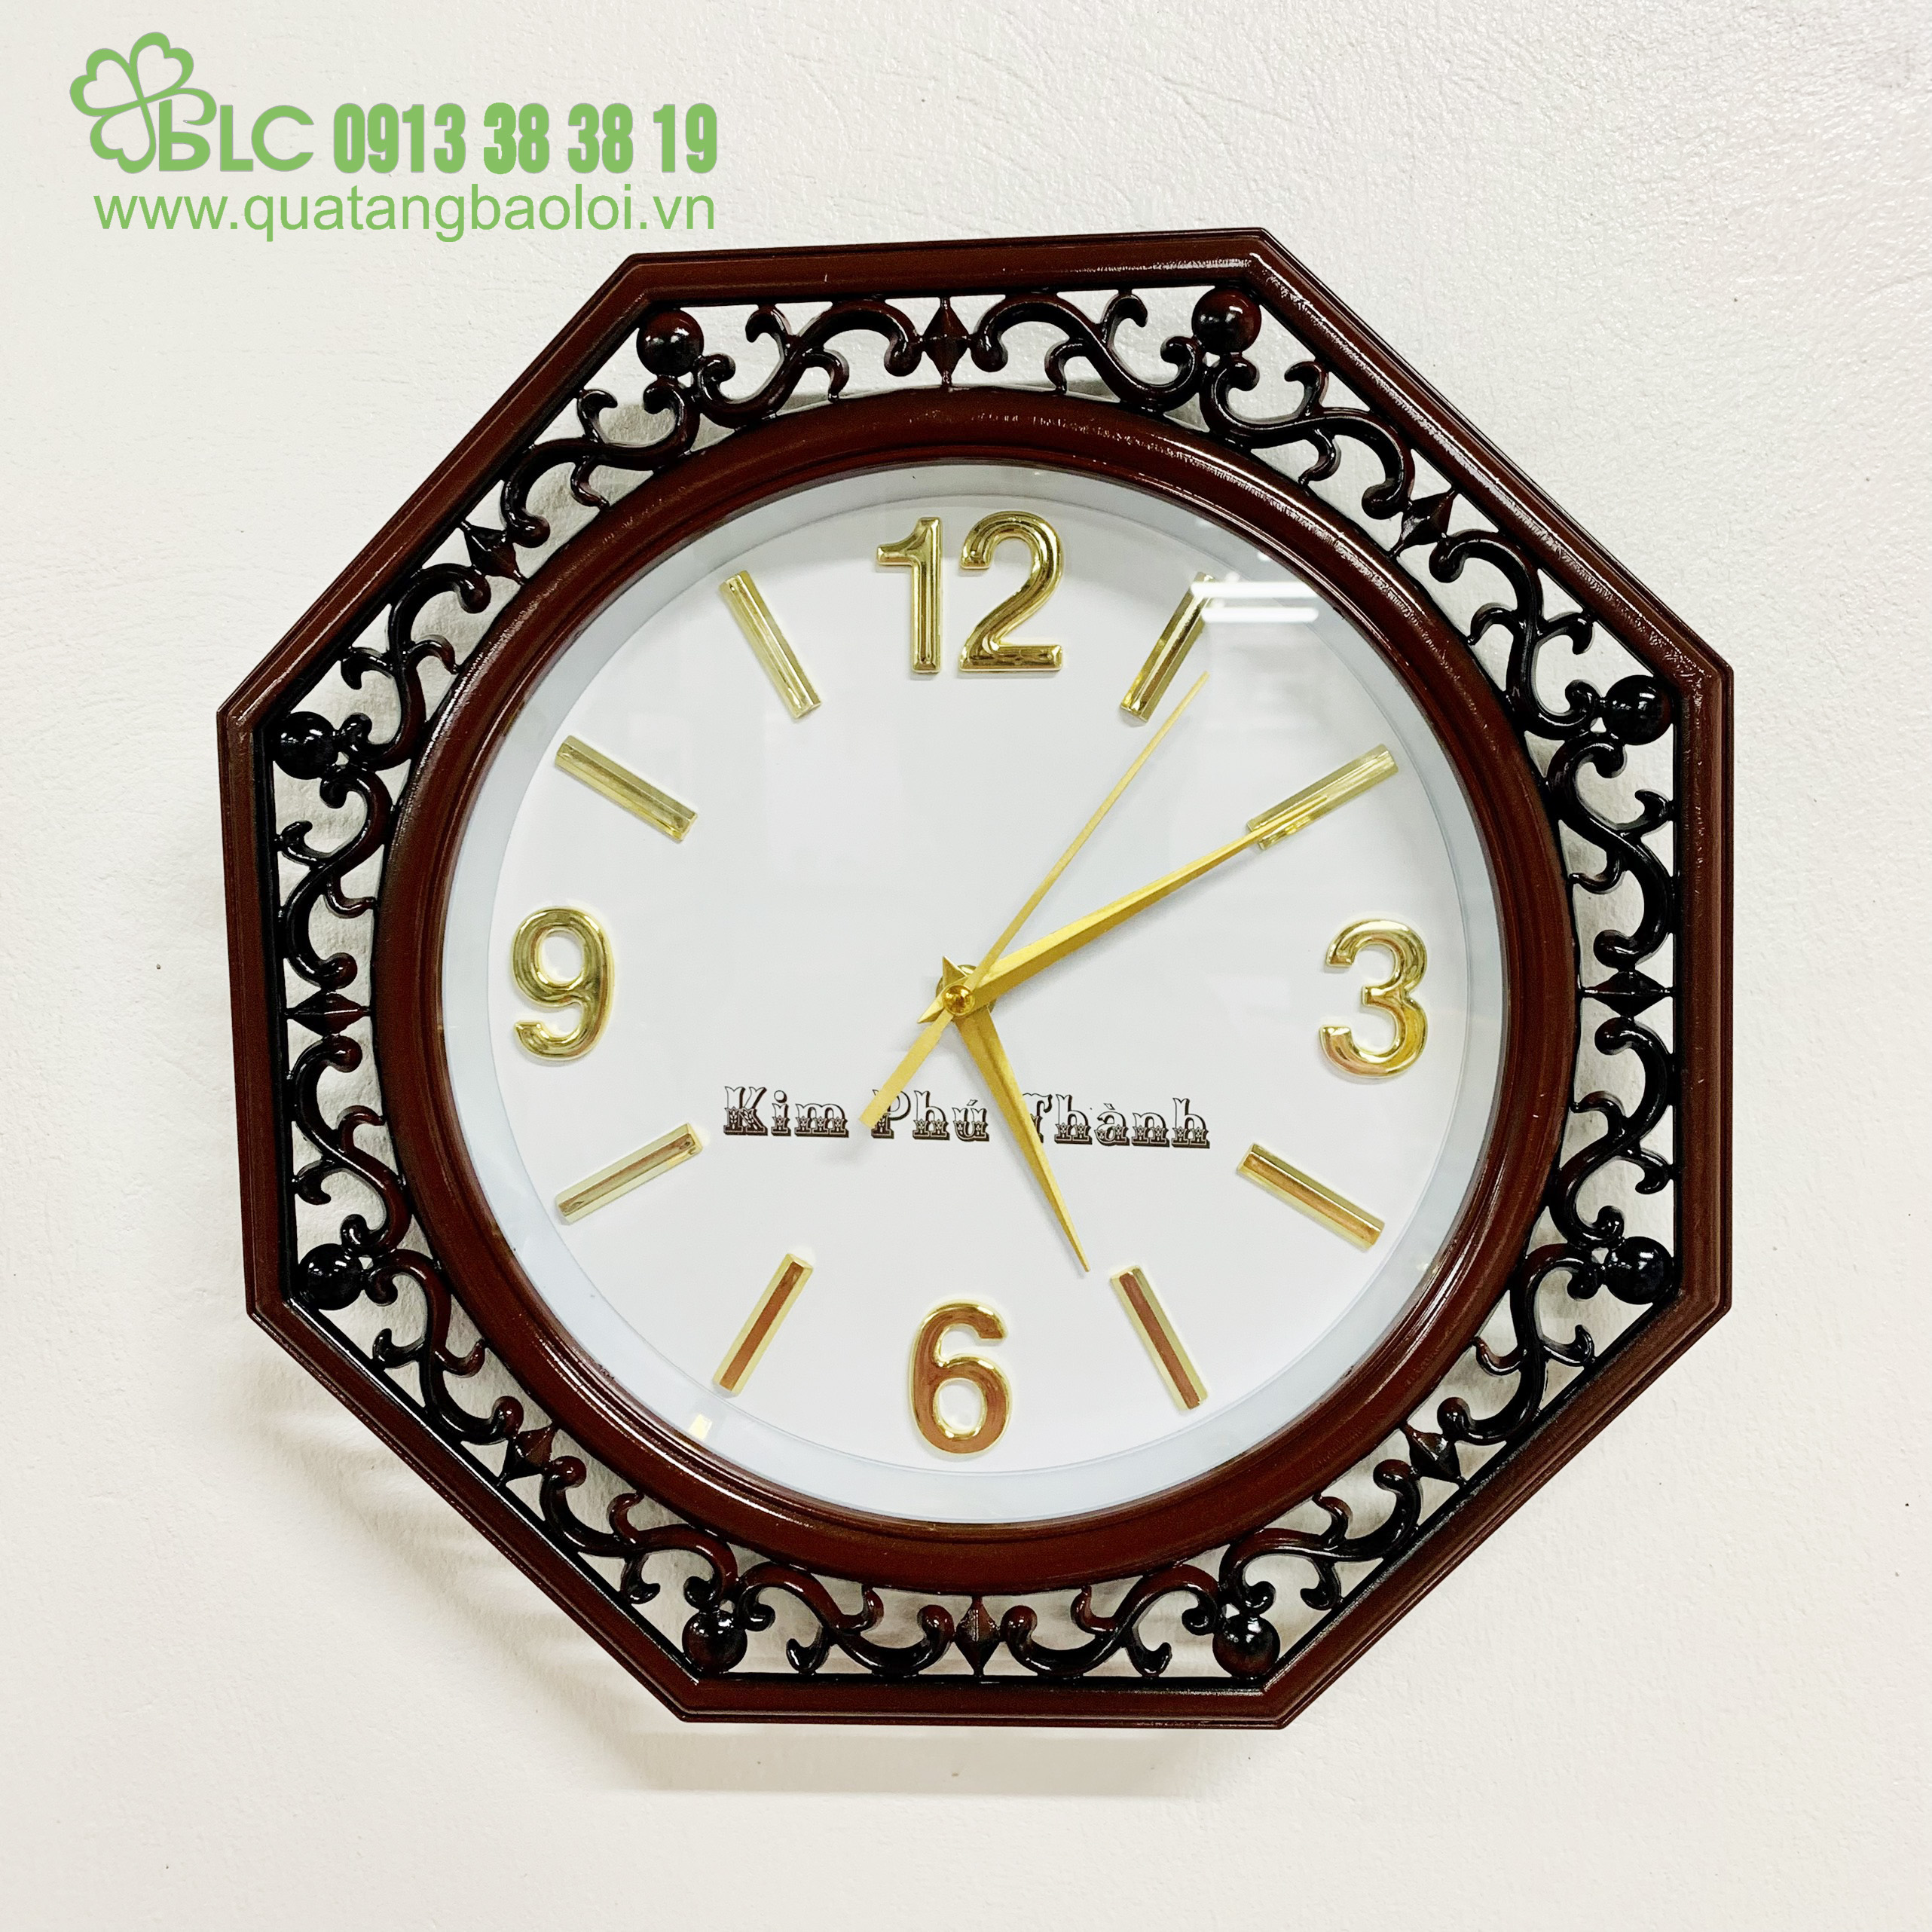 Đồng hồ treo tường Hải Phòng - DH035